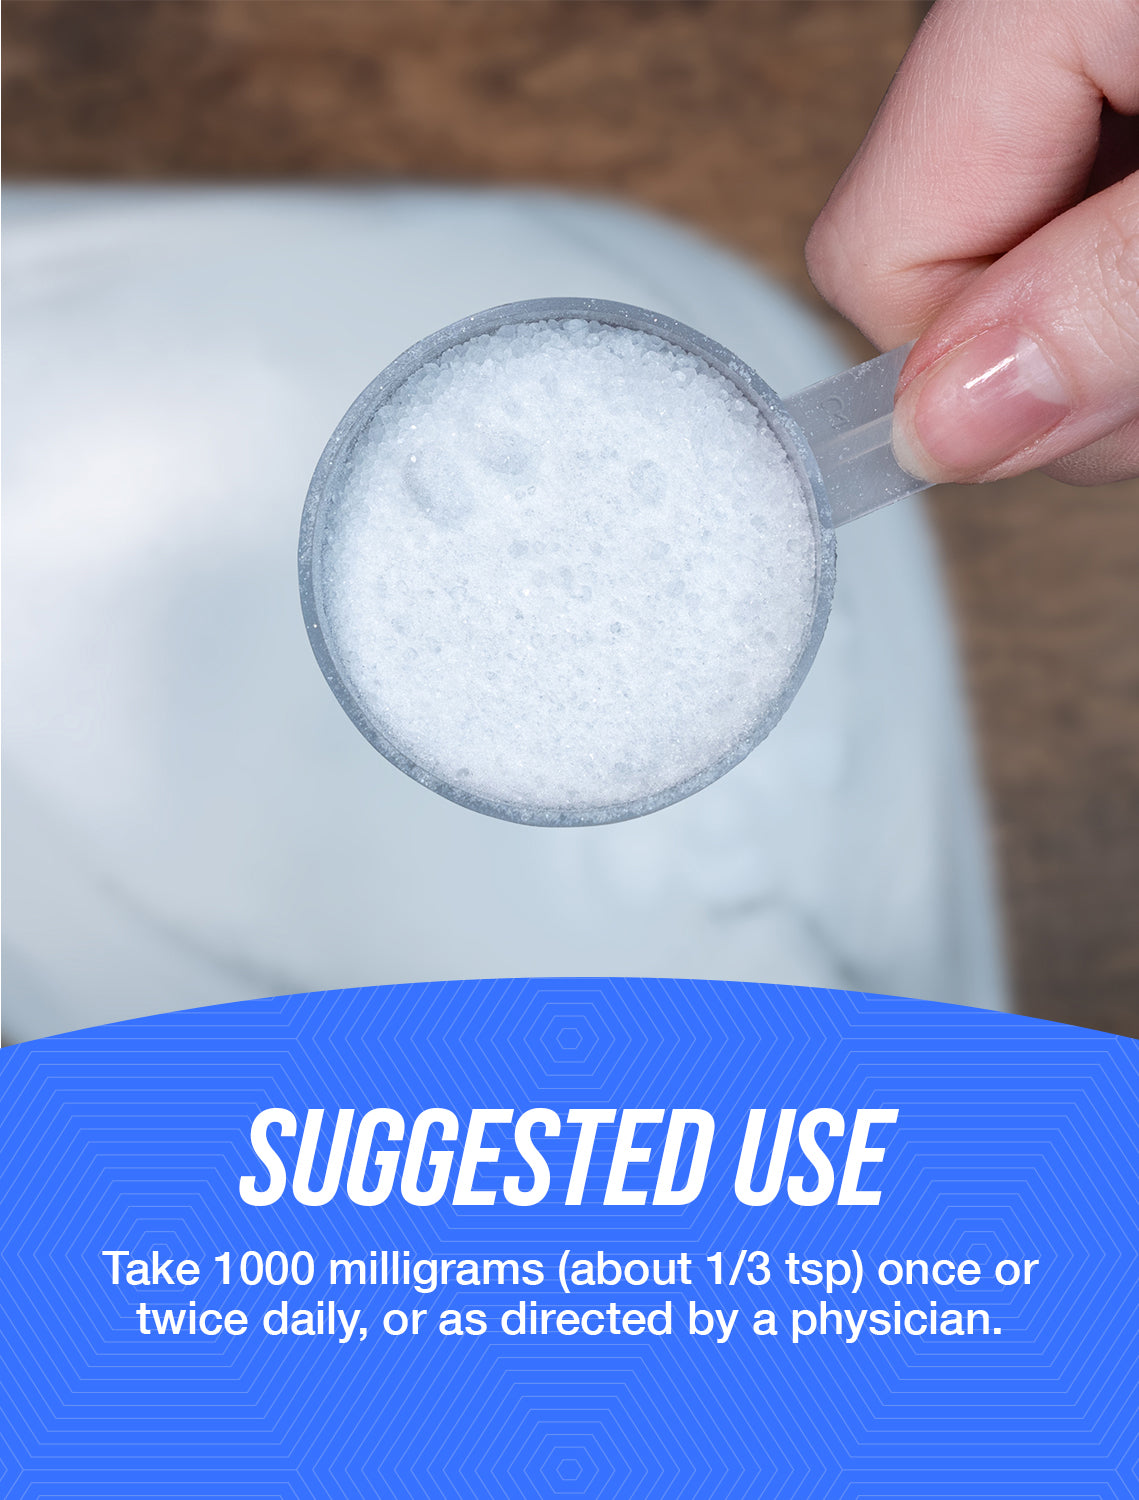 Calcium aspartate powder suggested use image